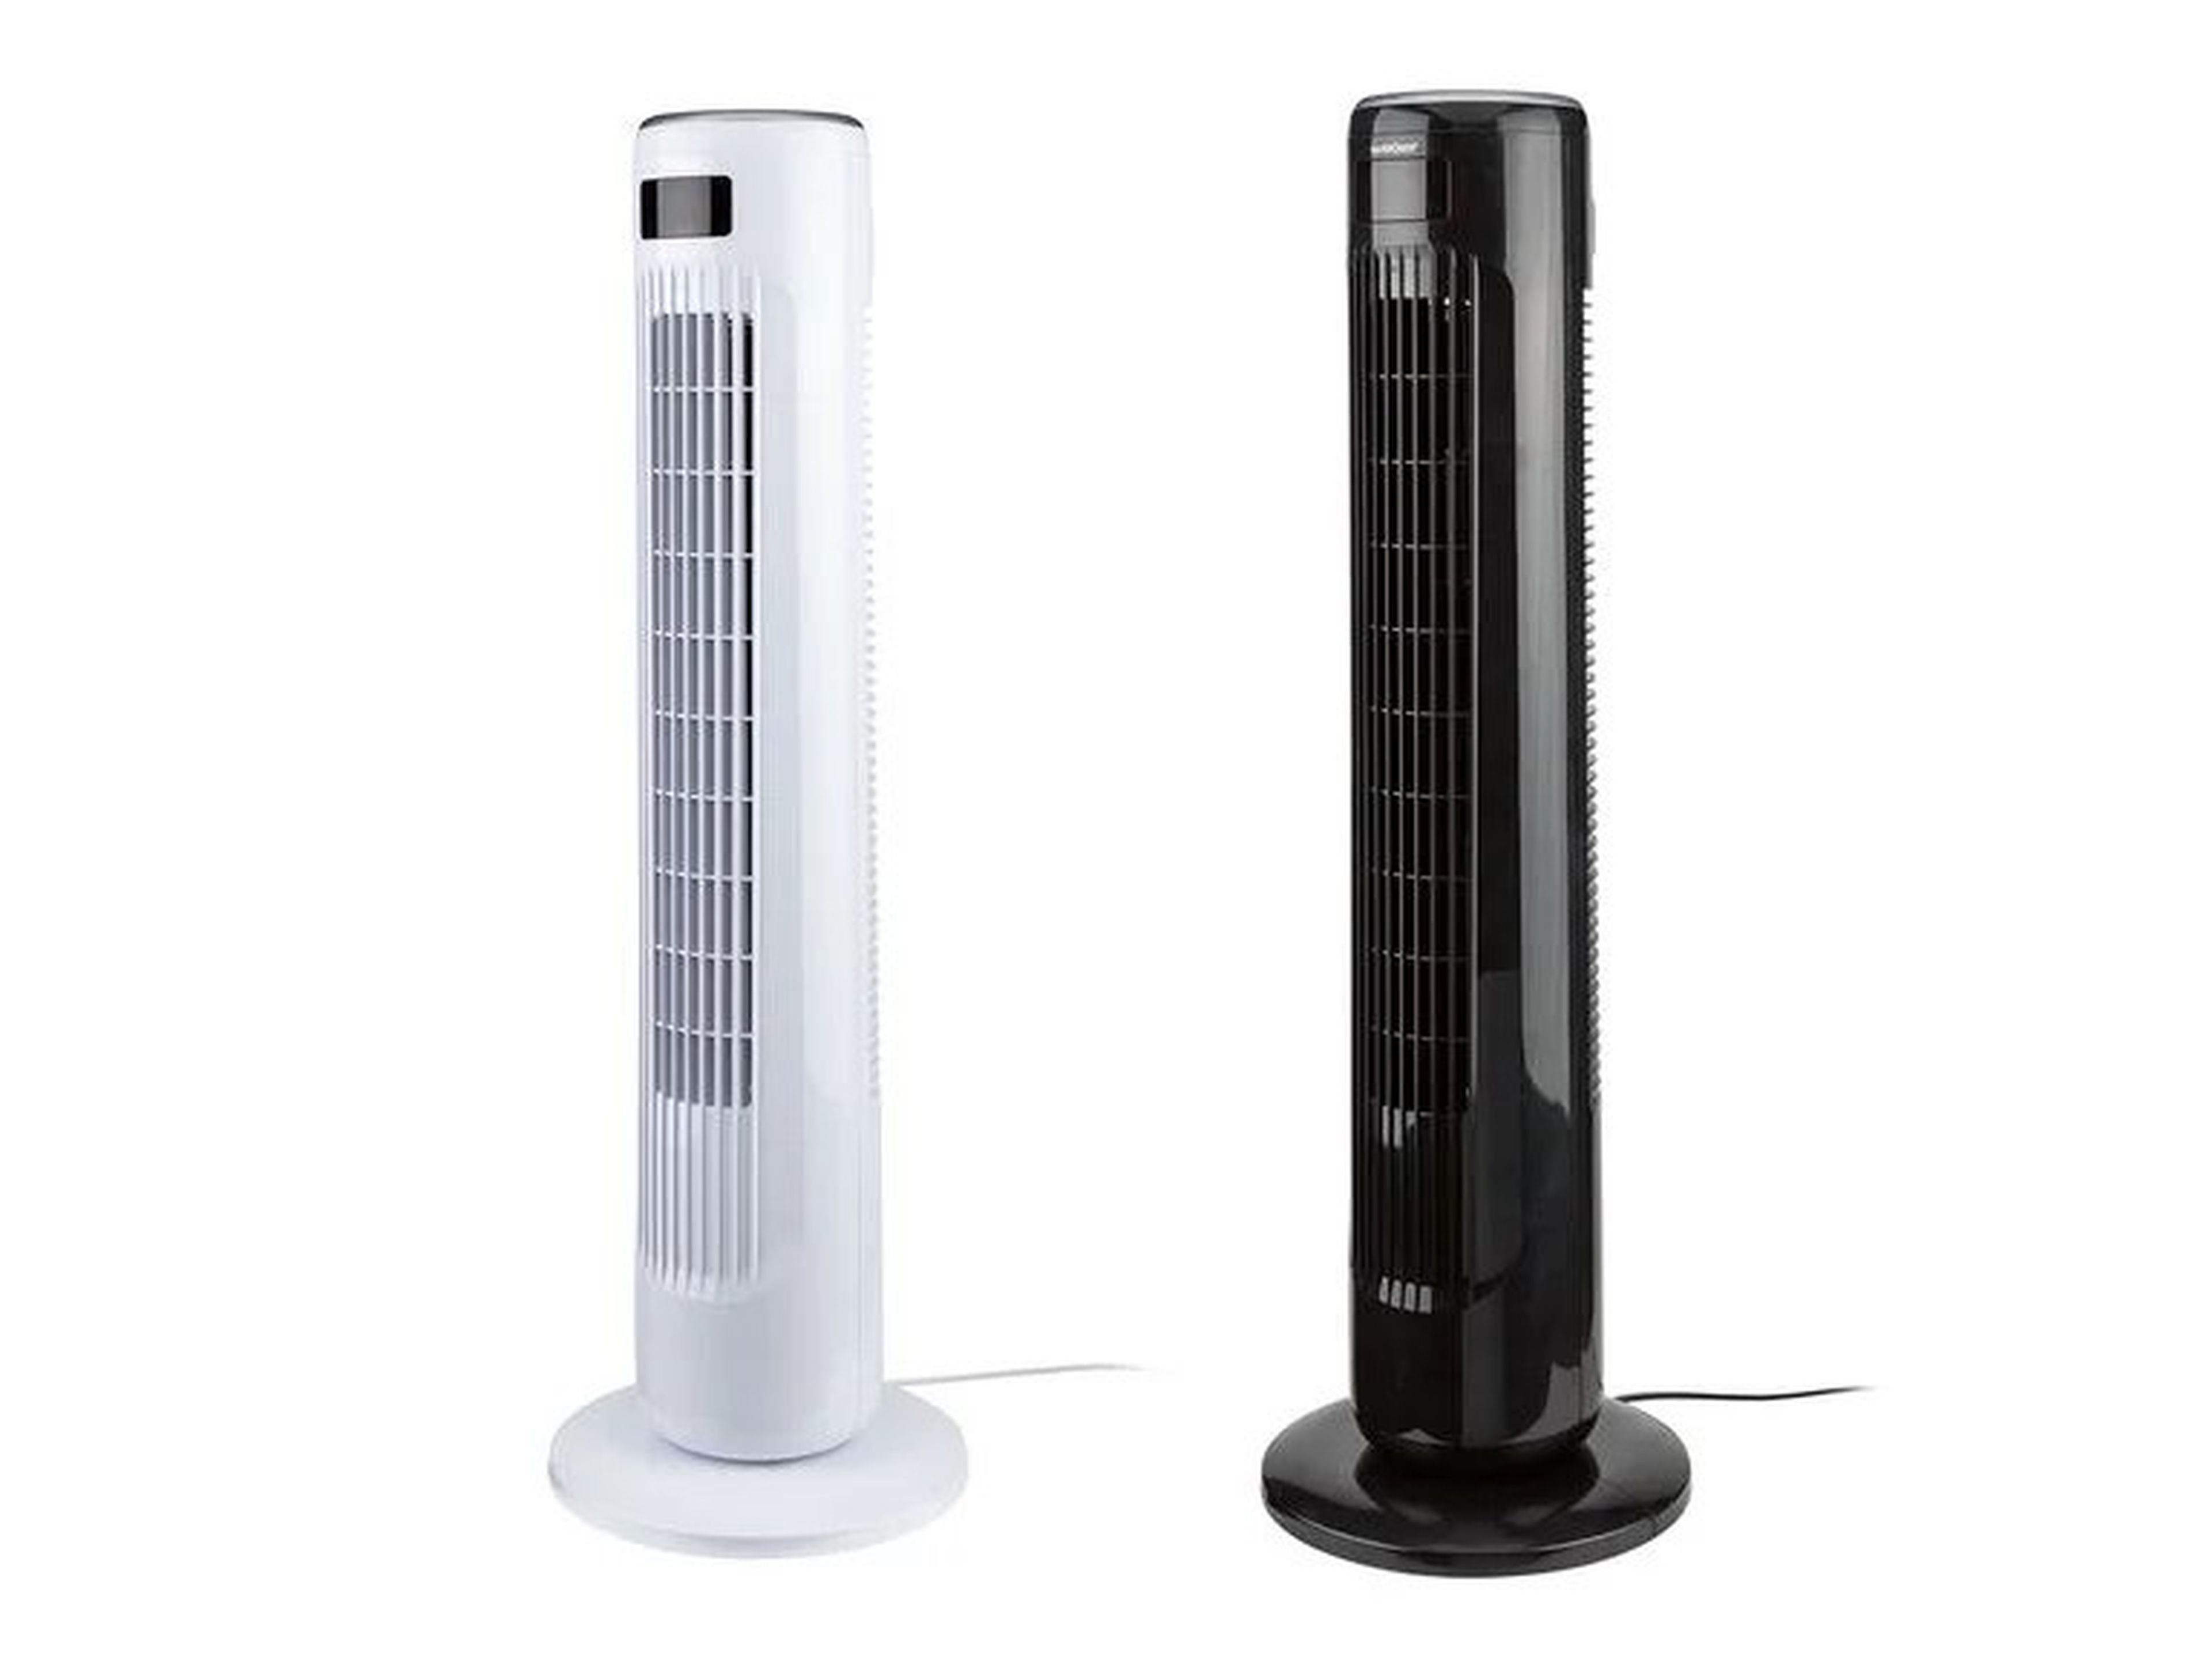 Lidl ofrece la forma de superar el calor del verano: un ventilador de torre con pantalla LCD, oscilación y 3 velocidades